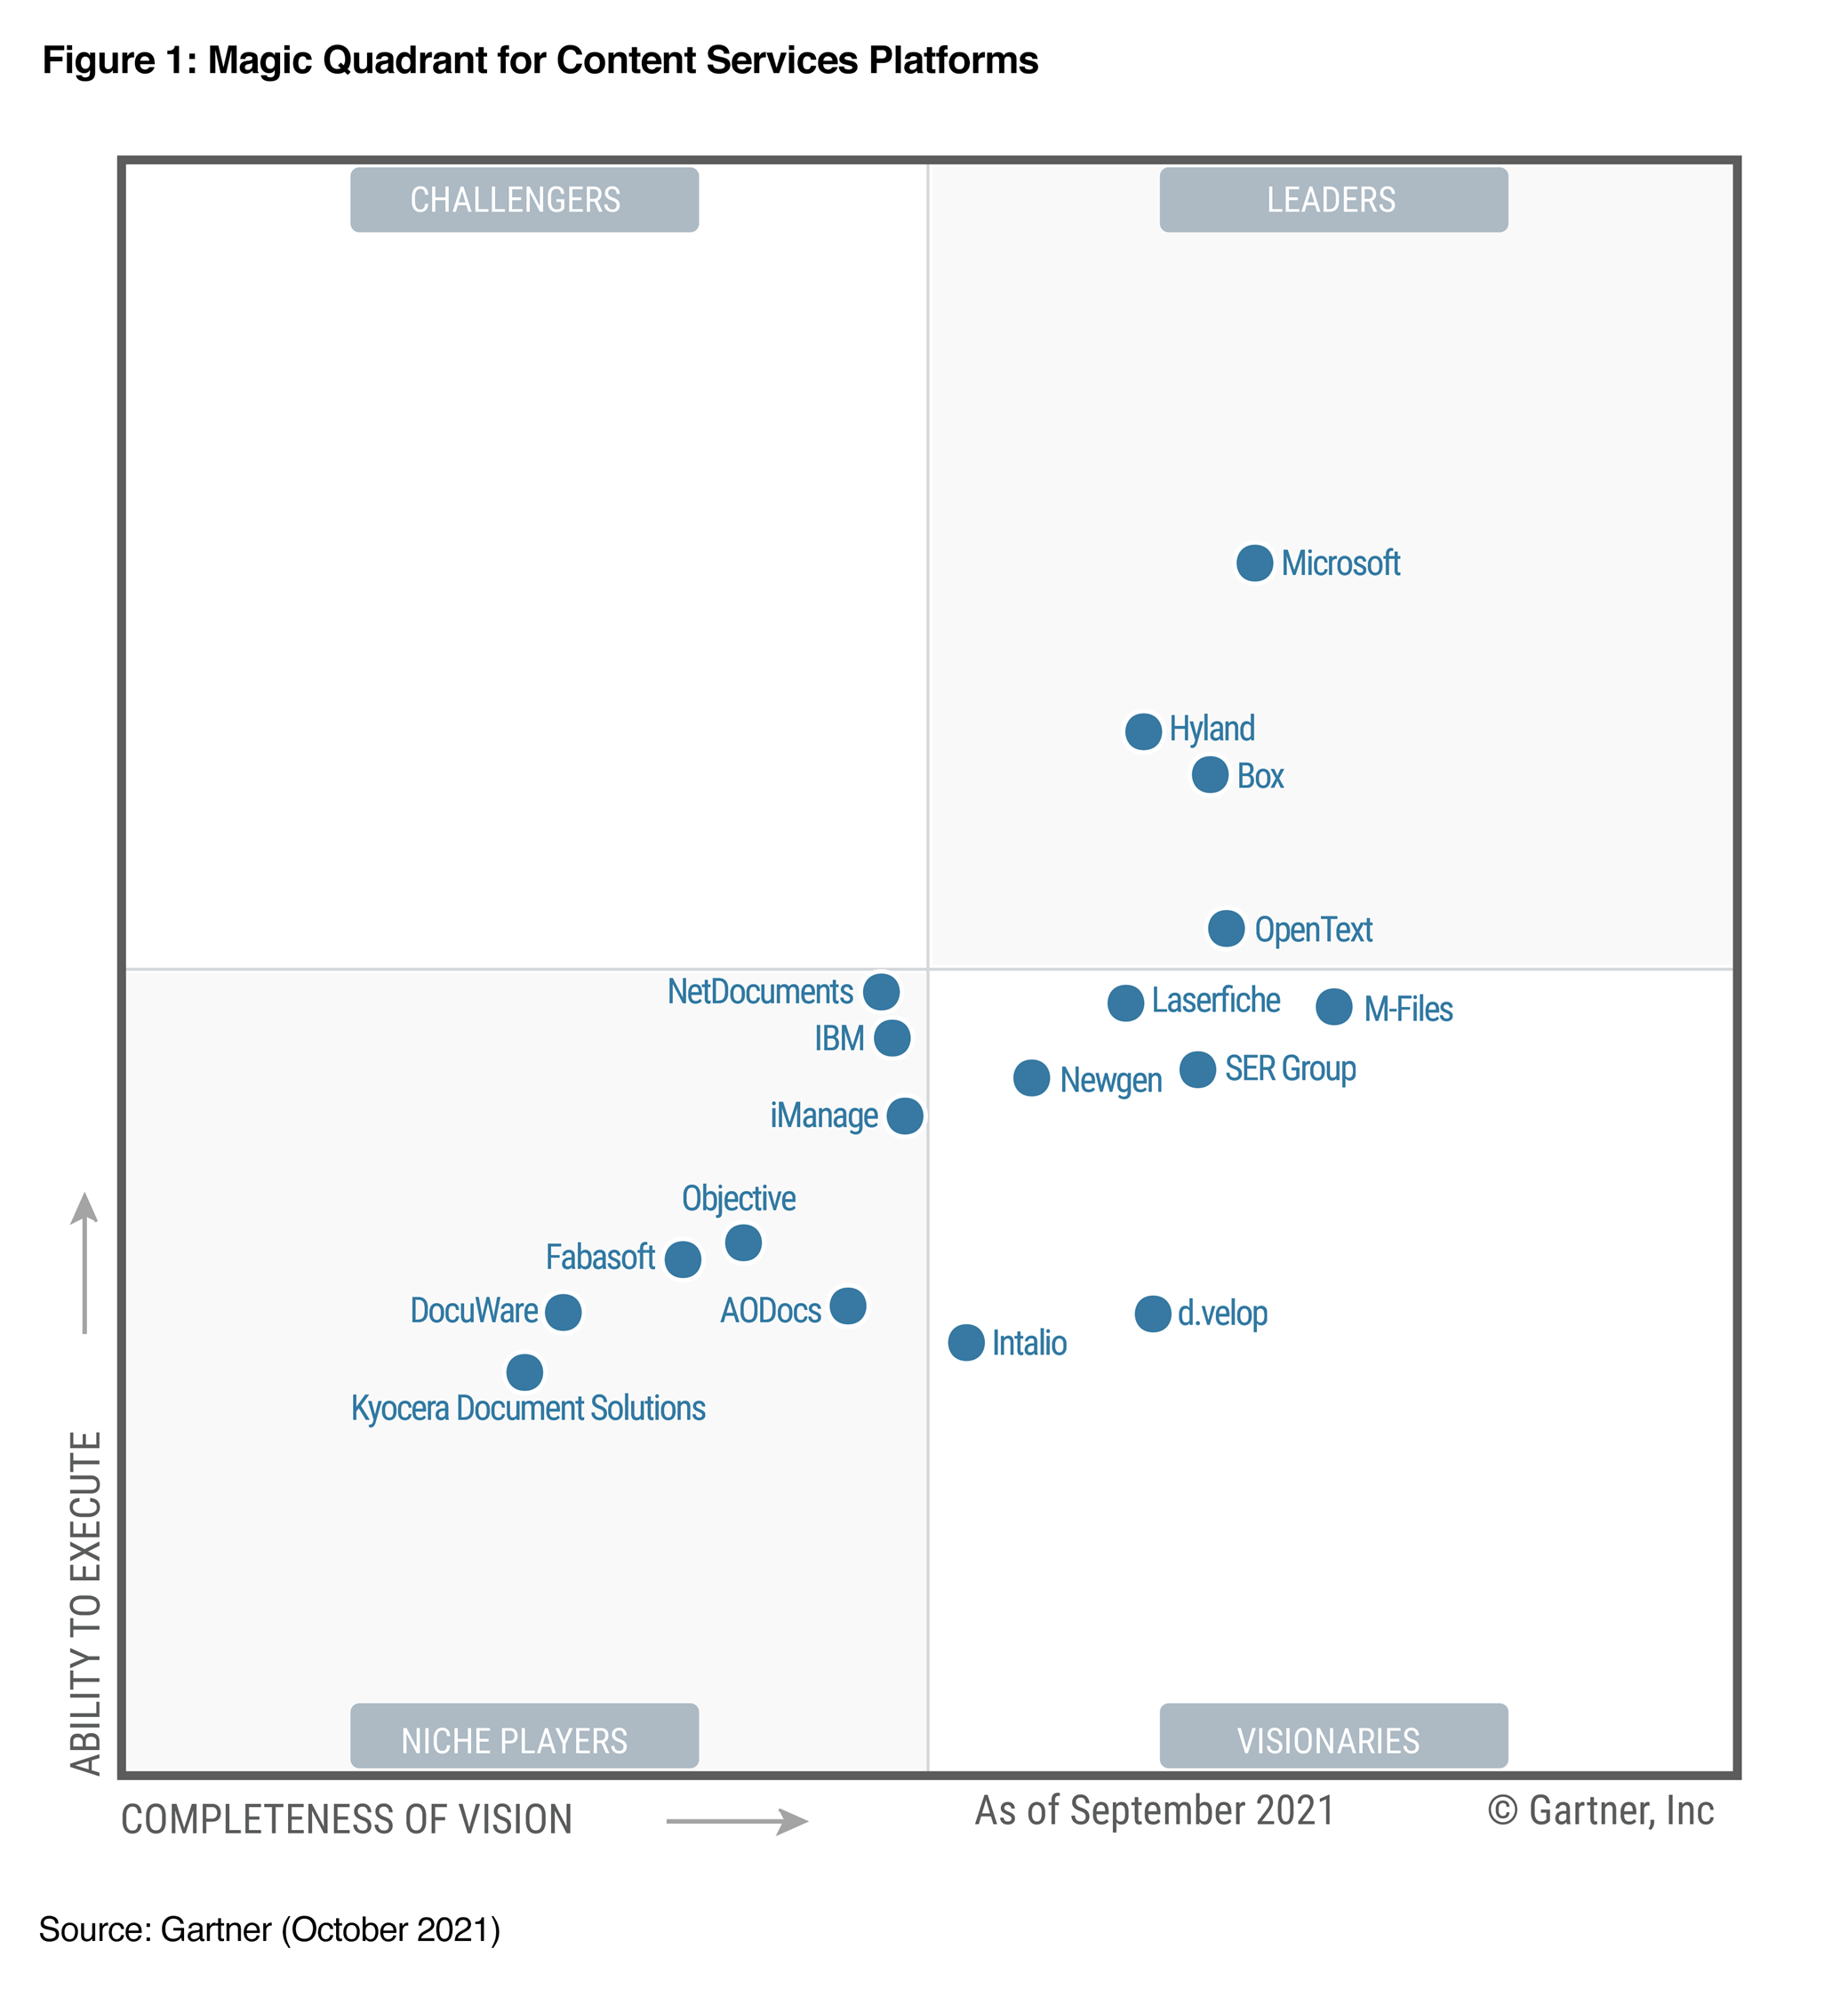 Graf C S P M Q 2021 od spoločnosti Gartner zobrazuje spoločnosť Microsoft v pravom hornom rohu medzi lídrami.